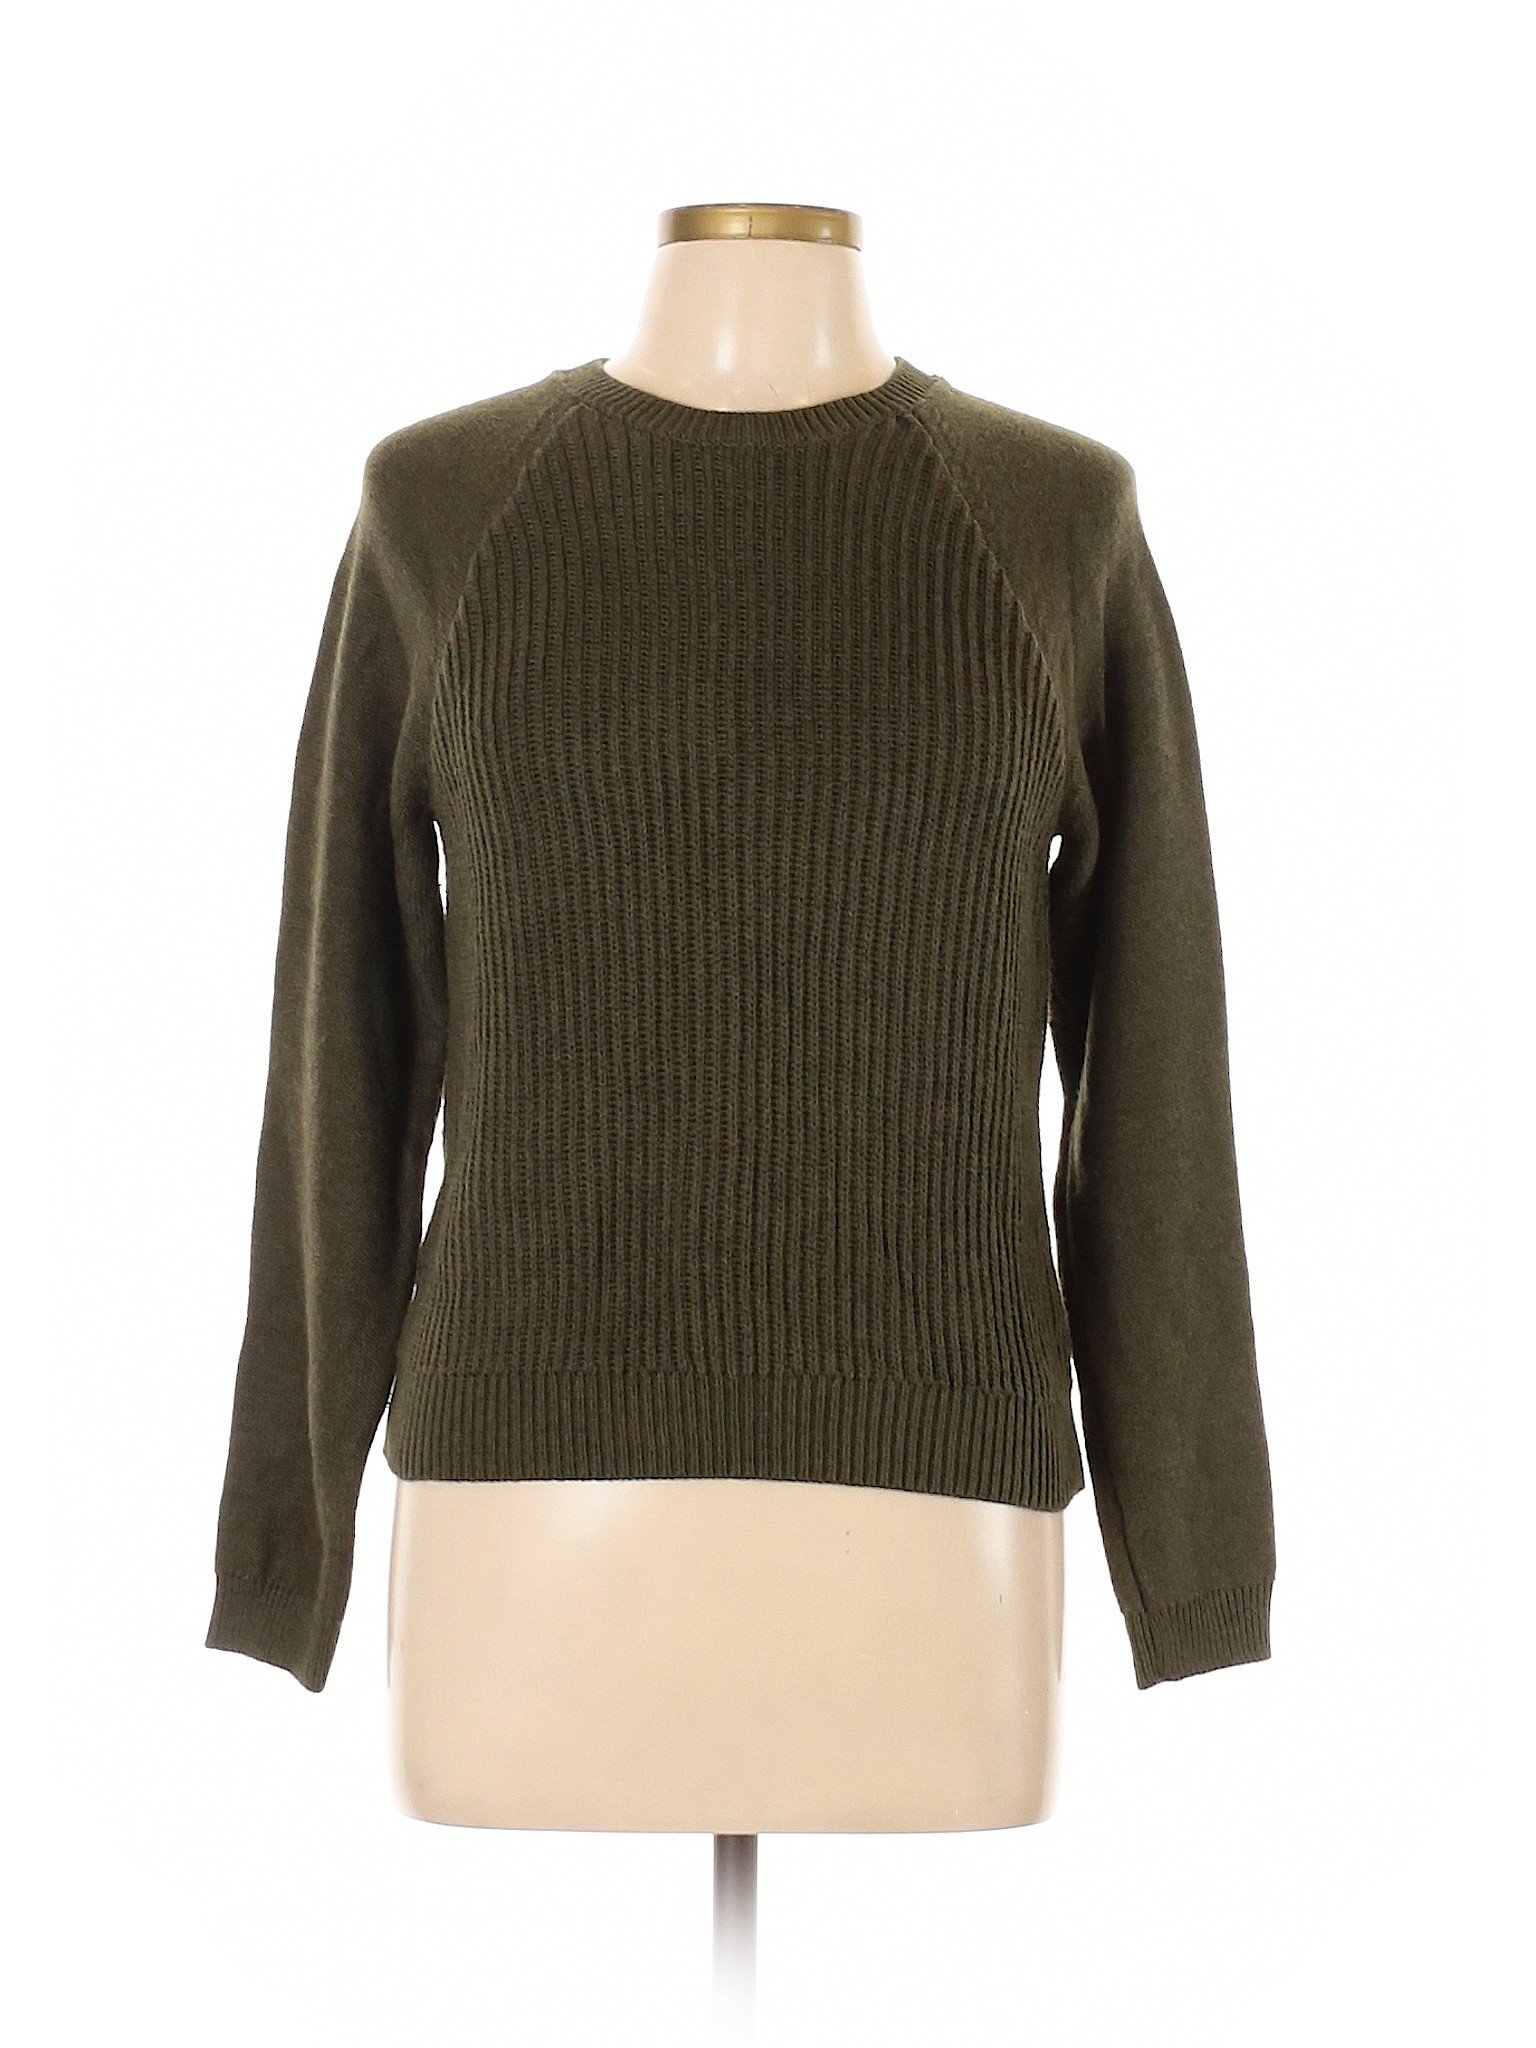 Aeropostale Women Green Pullover Sweater L | eBay